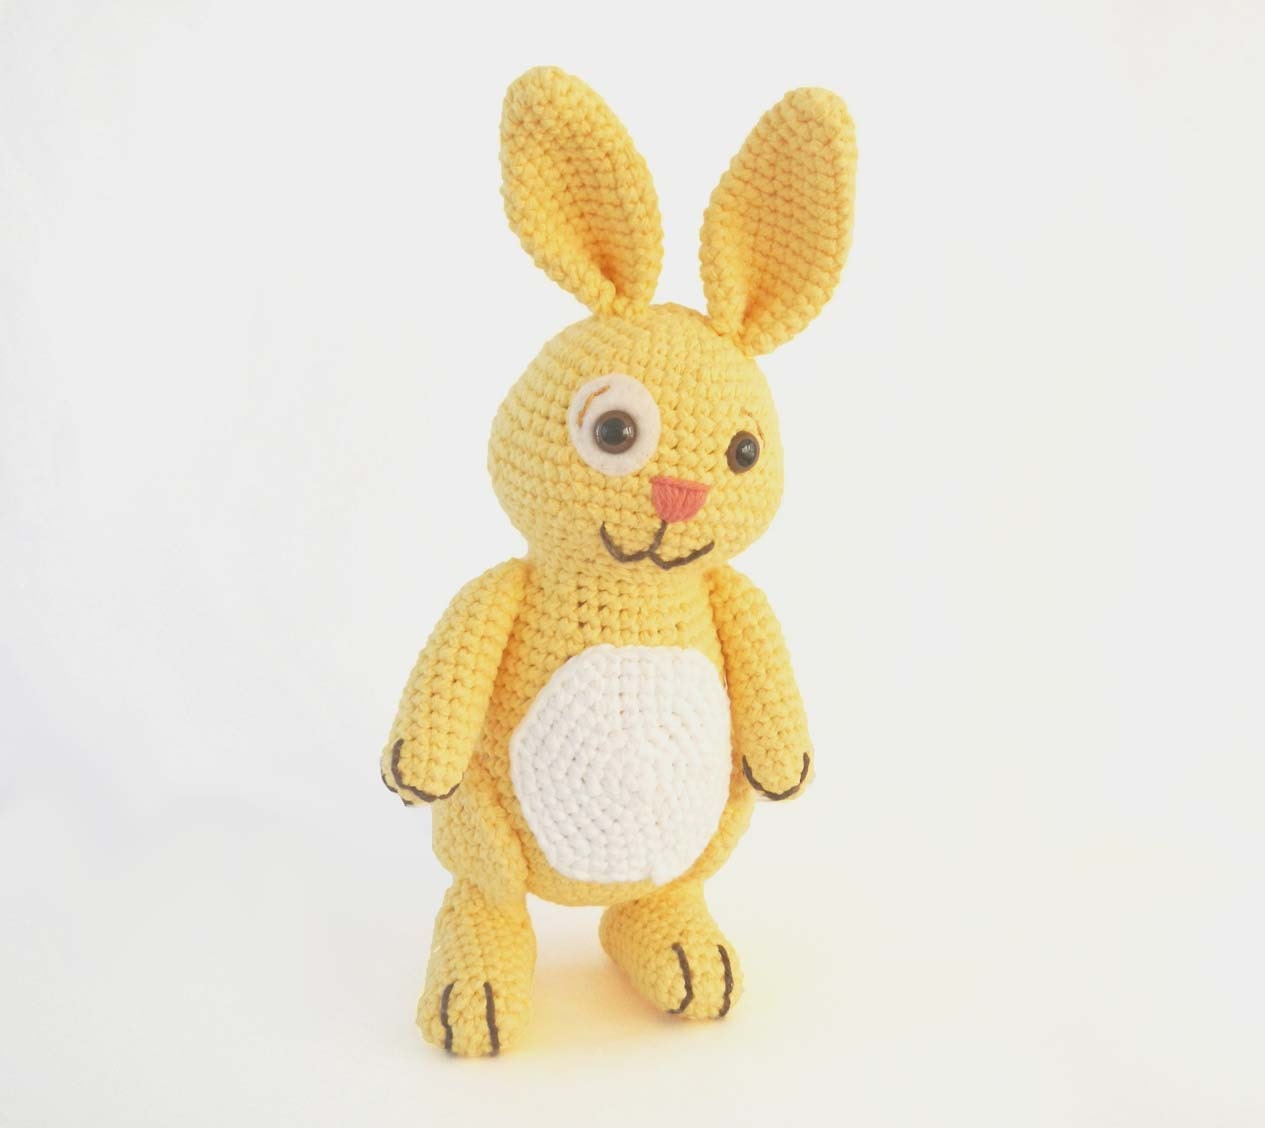 Crochet Stuffed Rabbit Toy Amigurumi Bunny - Yellow - HerterCrochetDesigns